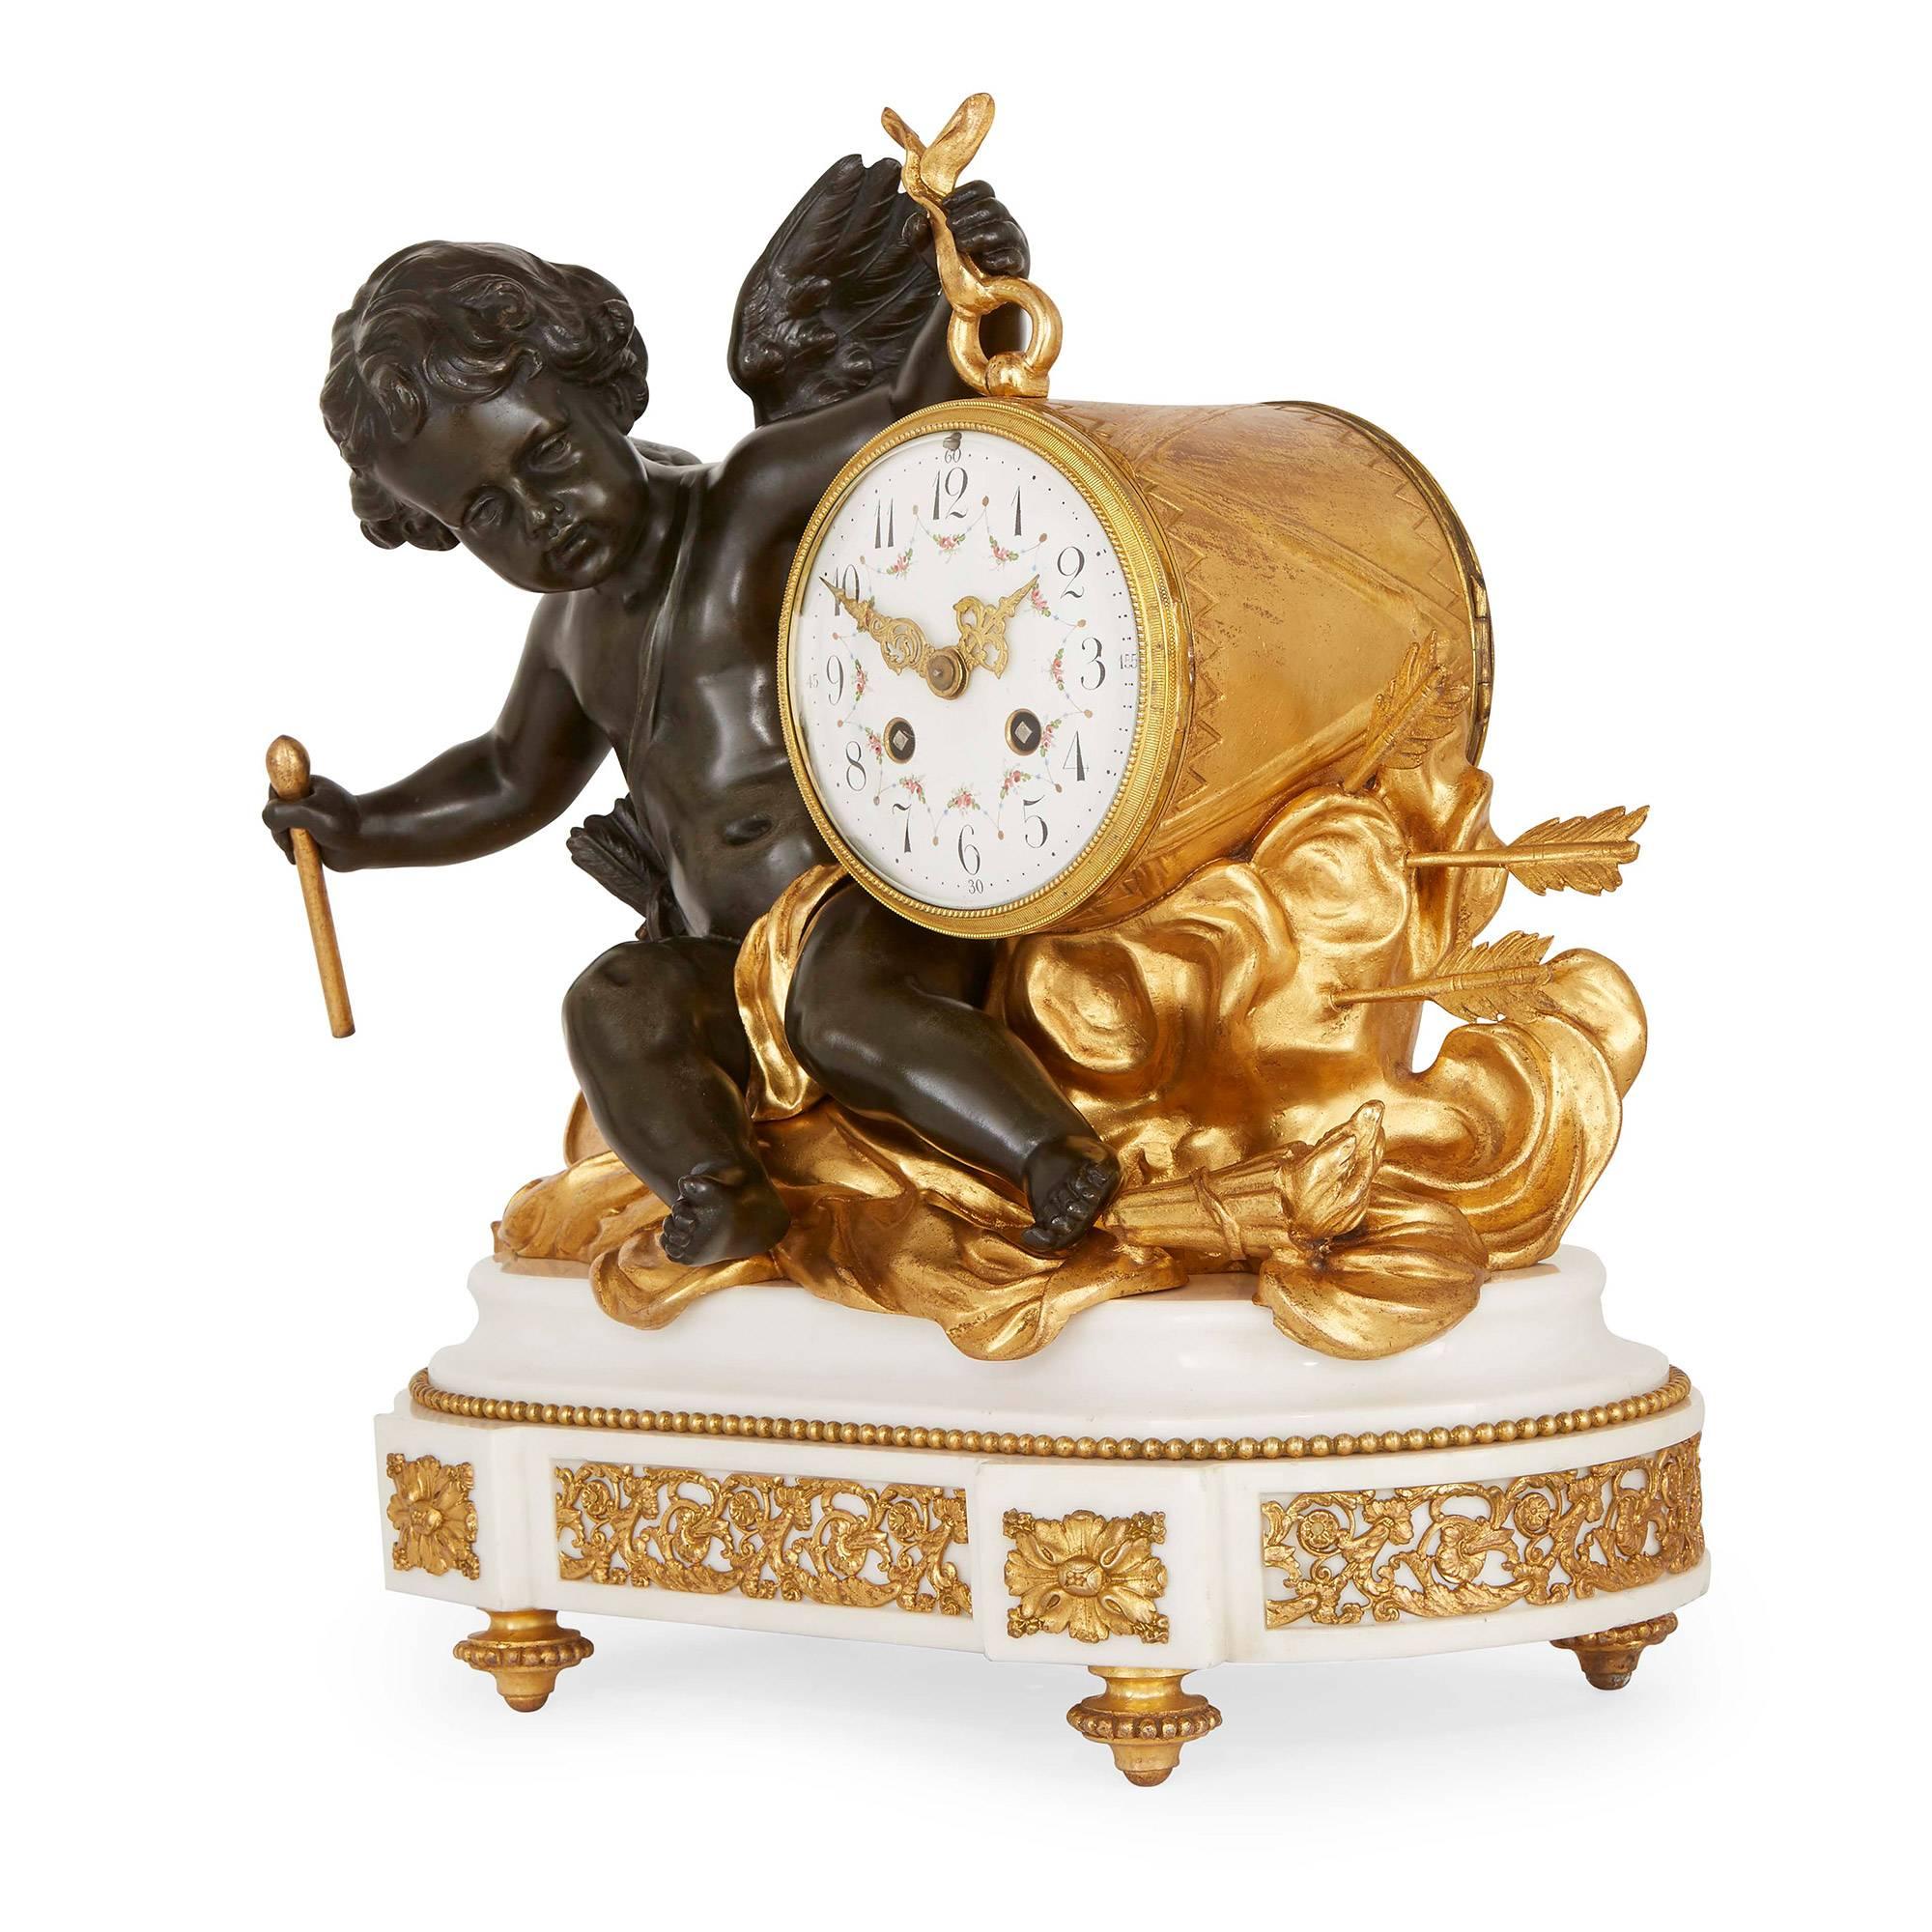 Comprenant une horloge centrale et une paire de candélabres à deux lumières, l'horloge avec un putto en bronze tenant l'horloge et assis sur diverses décorations en bronze doré au-dessus d'une base en marbre blanc montée en bronze doré, la paire de